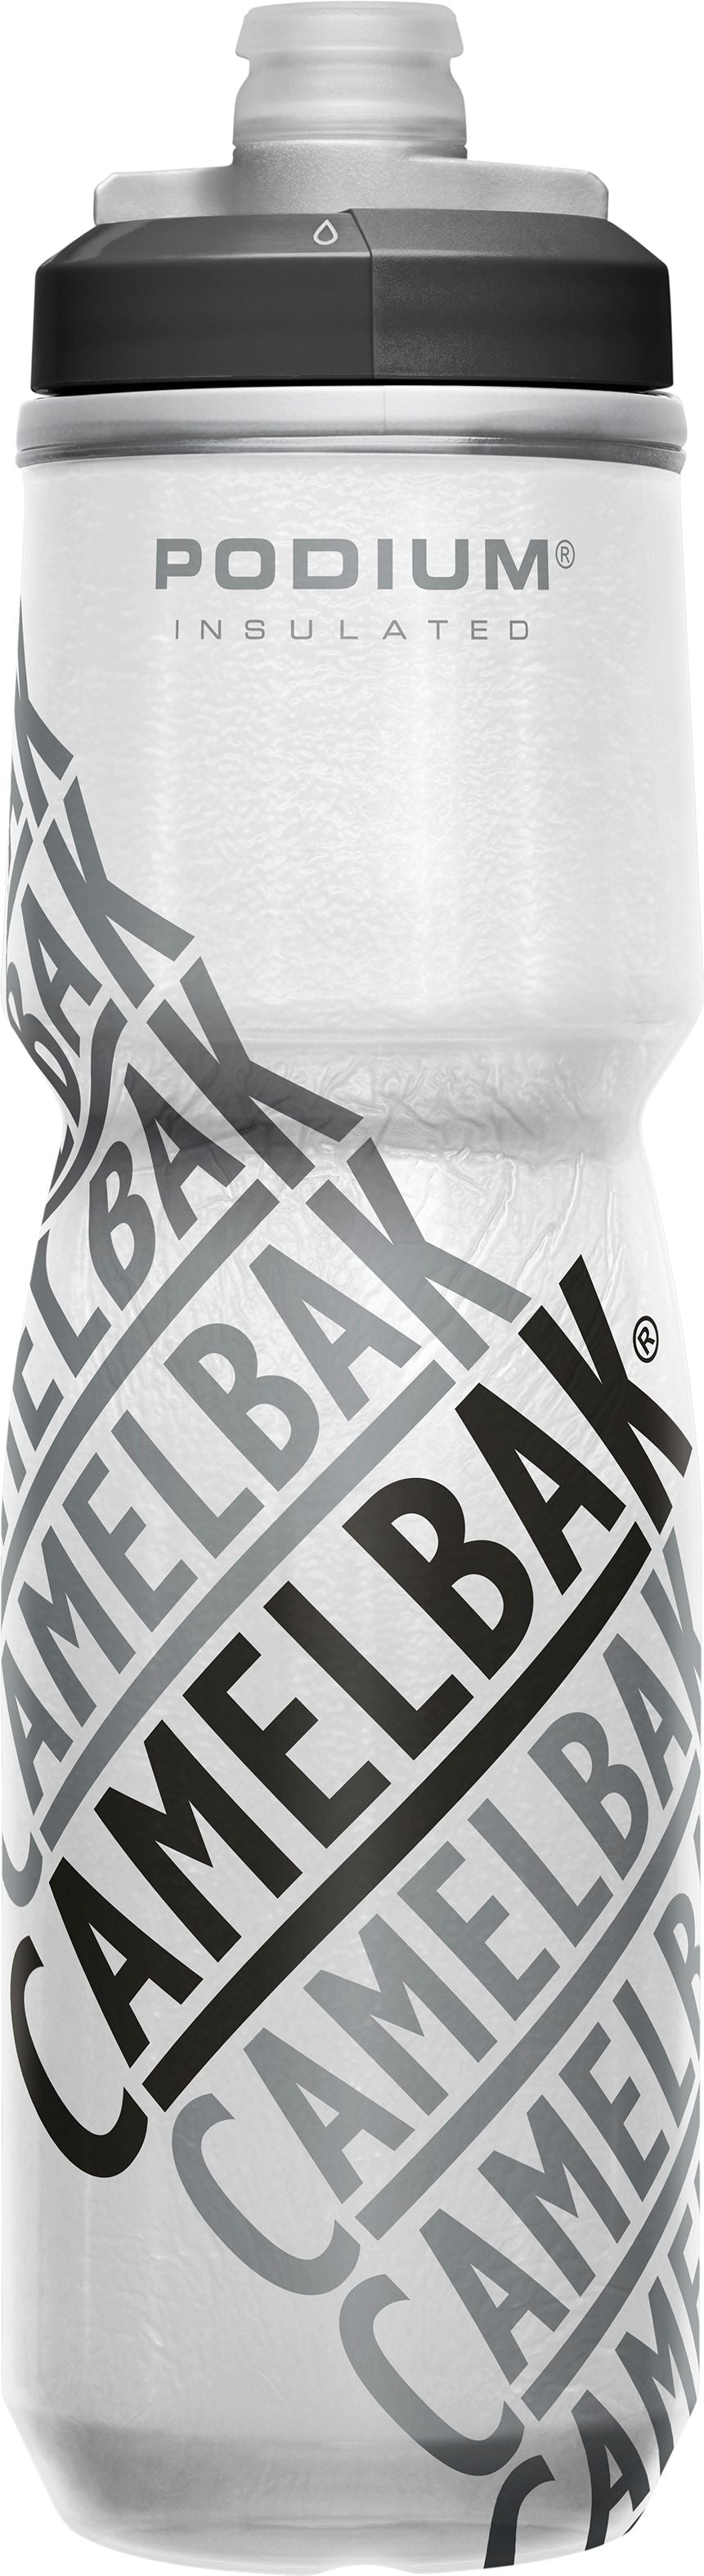 Camelbak Podium Chill Bike Bottle, Insulated Water Bottles Camelbak 24 oz Race Edition 2023 